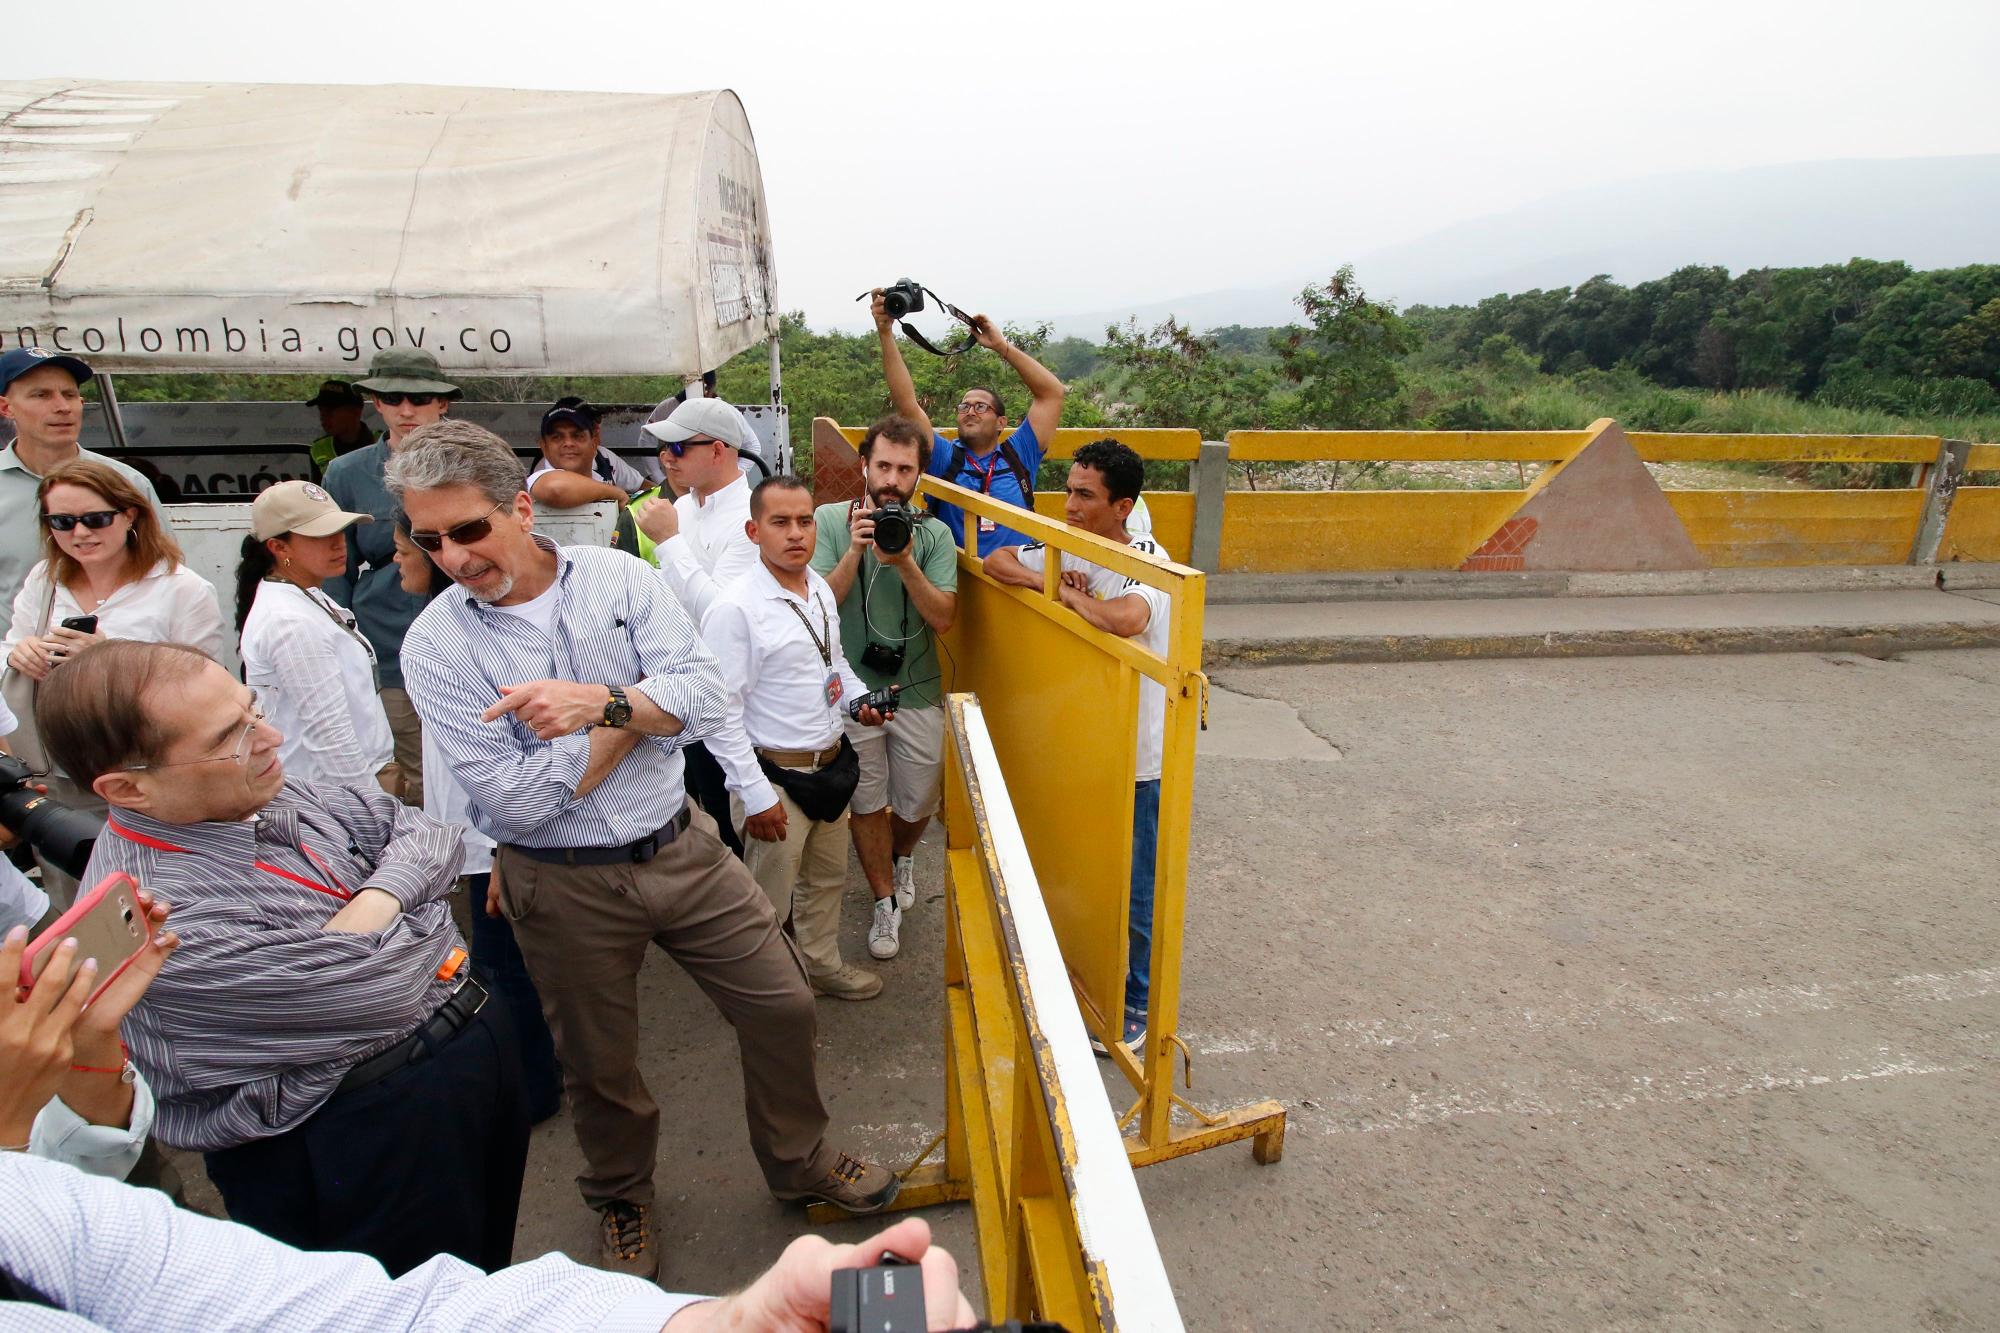 El embajador de Estados Unidos en Colombia Kevin Whitaker (c) conversa con el senador estadounidense Chairman Jerrold Nadler (i) este viernes, durante una vista que realizaron varios senadores norteamericanos al puente internacional Simón Bolívar, en la frontera entre Cúcuta (Colombia) y Venezuela. 